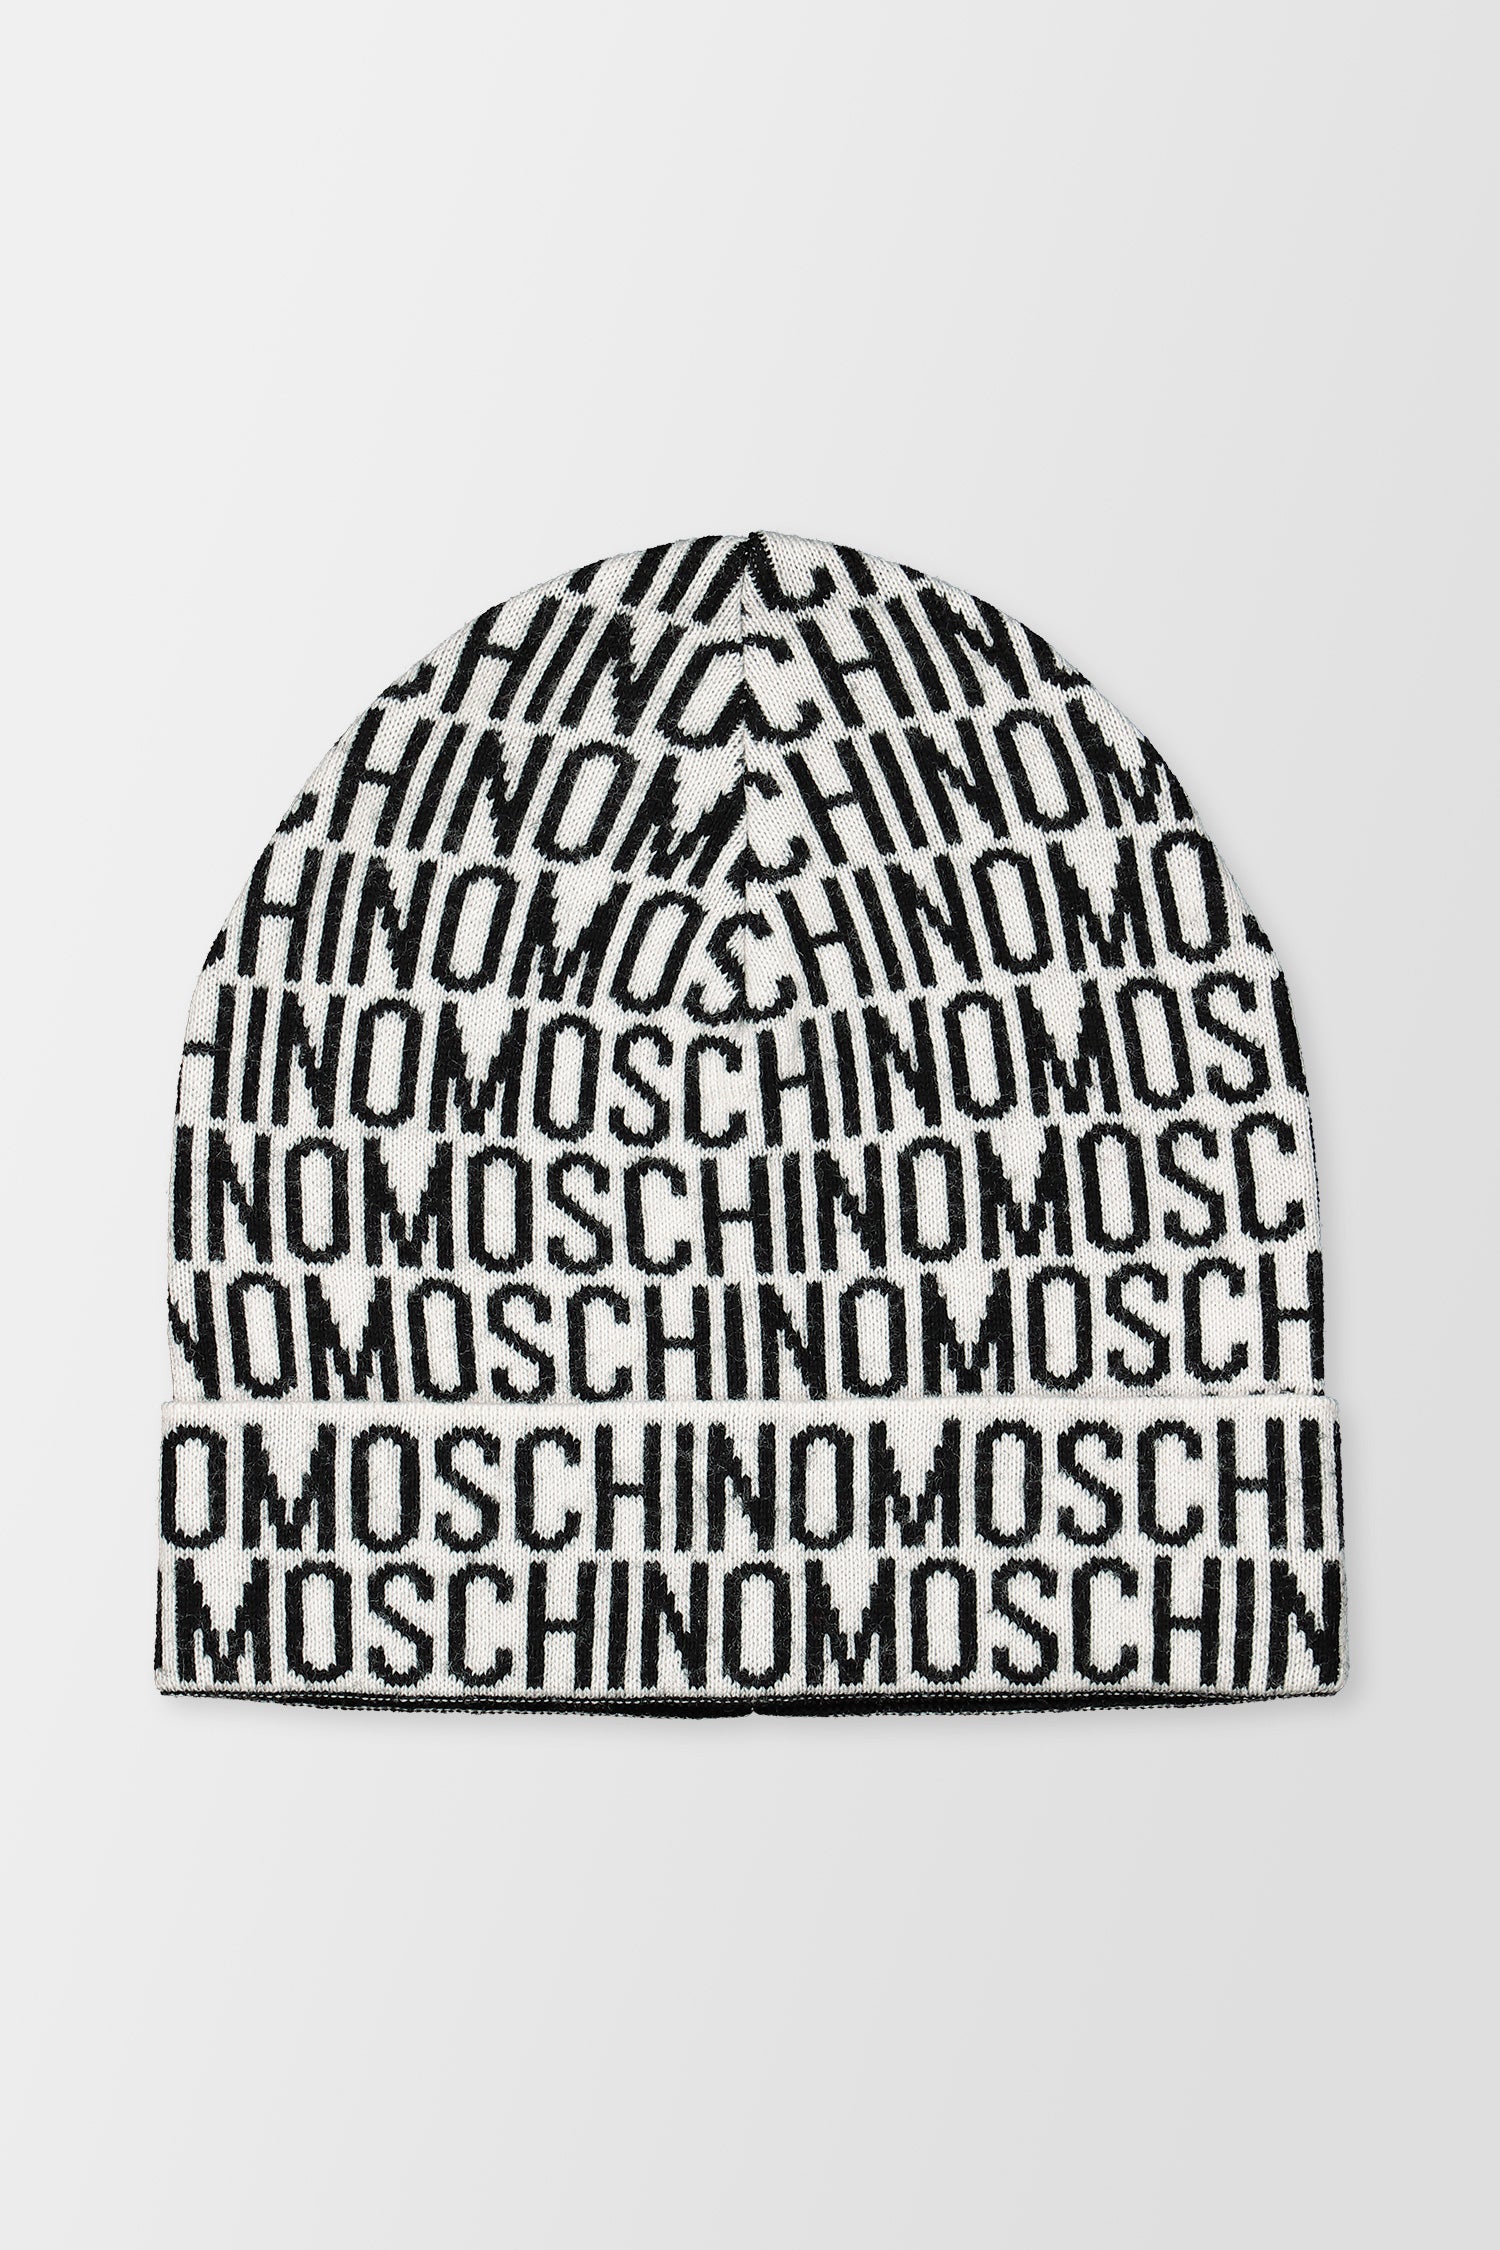 Moschino White/Black Beanie Hat